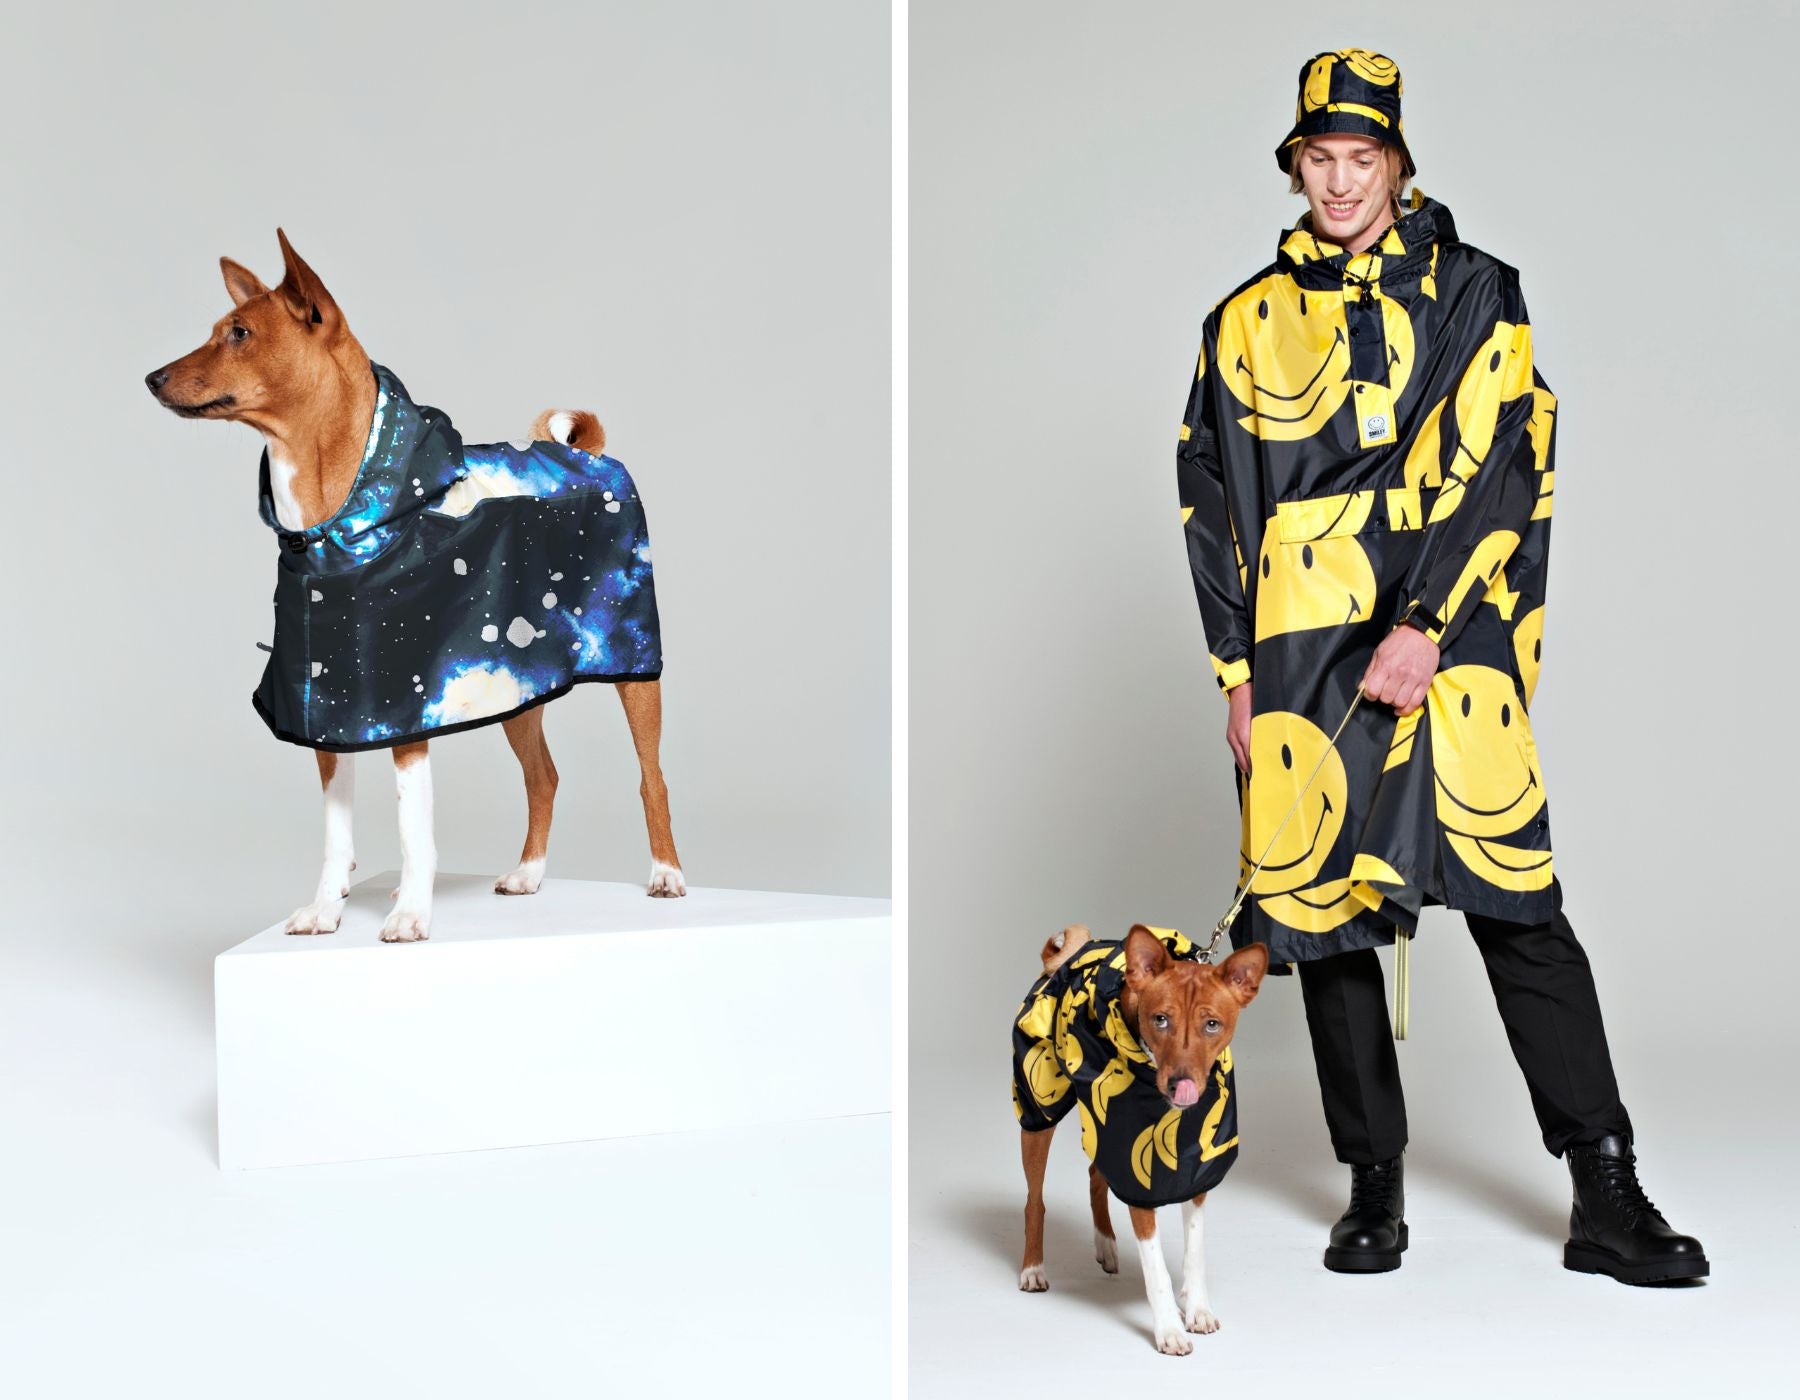 Rainkiss blauwe regenponcho voor honden, naast een regenponcho met Smiley-patroon voor zowel mensen als honden